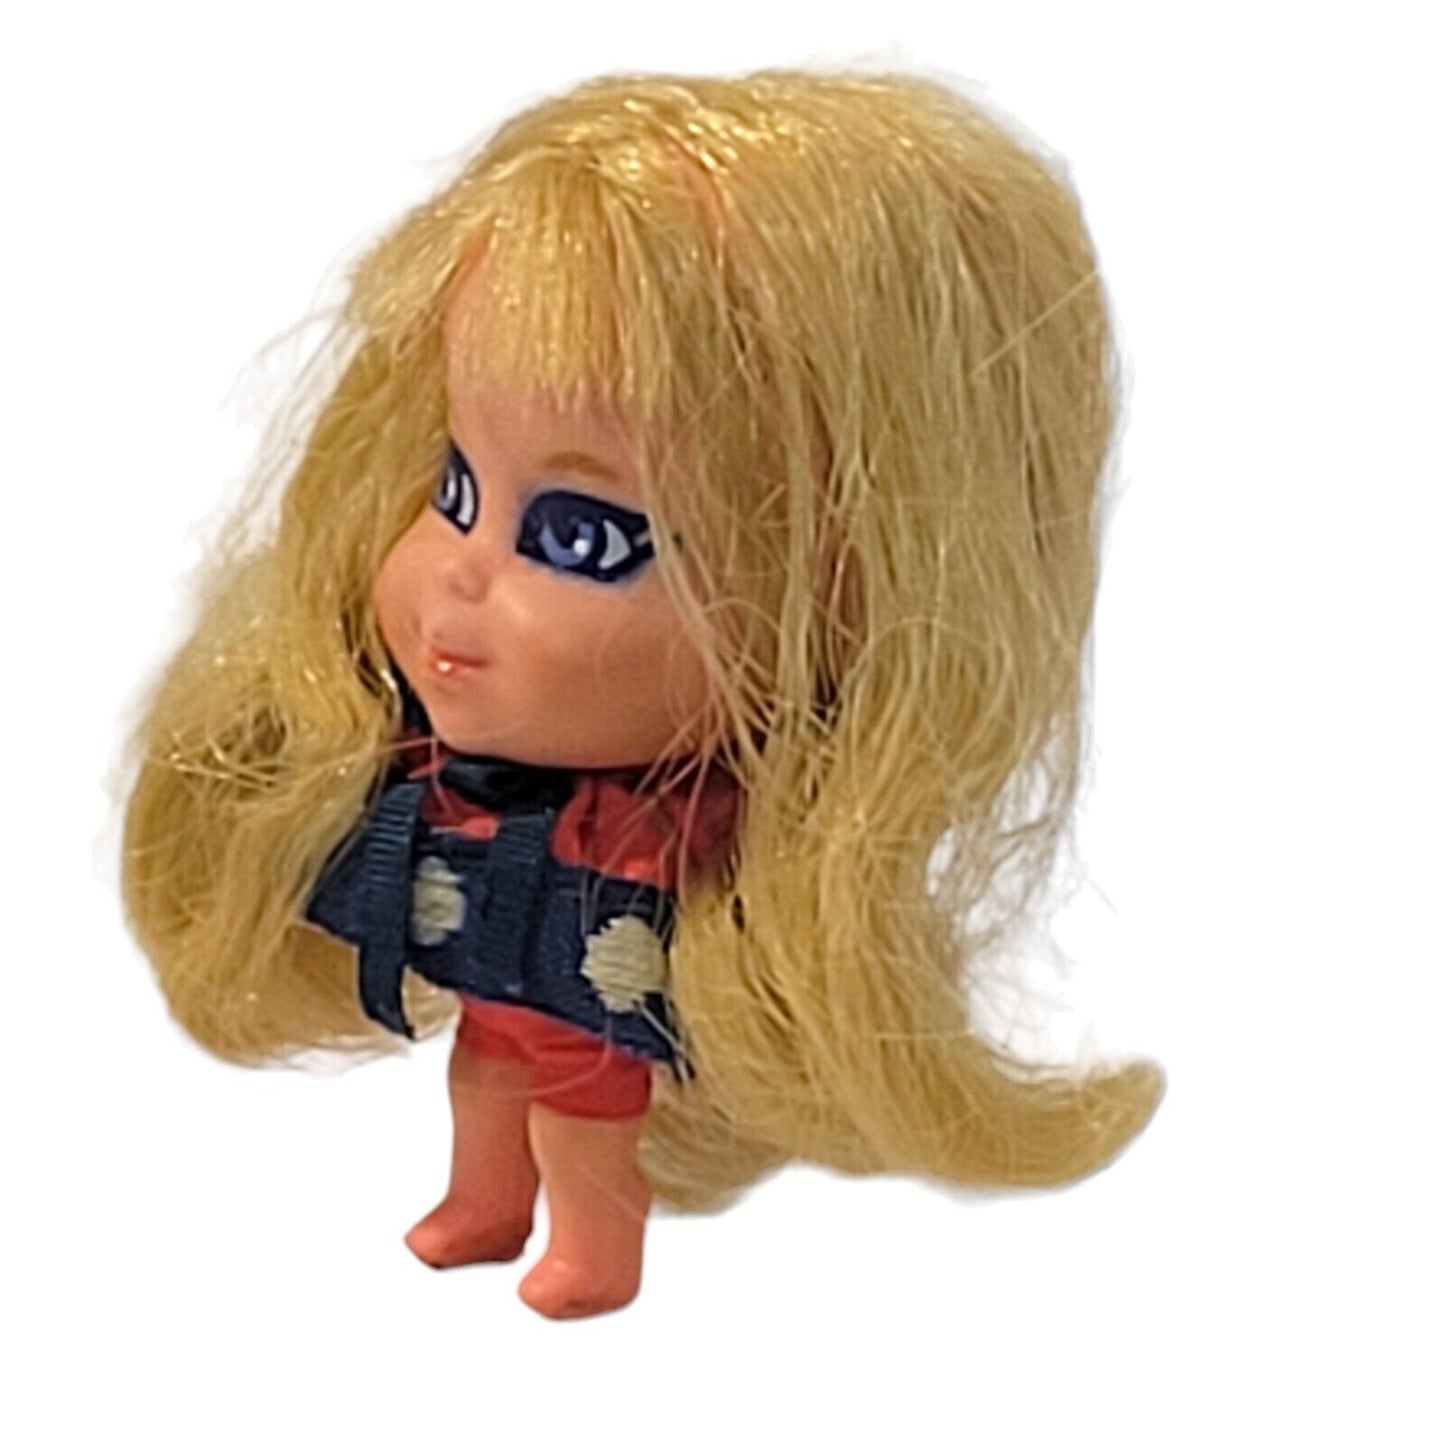 Vintage 1968 Mattel Liddle Kiddles Lorelei Doll